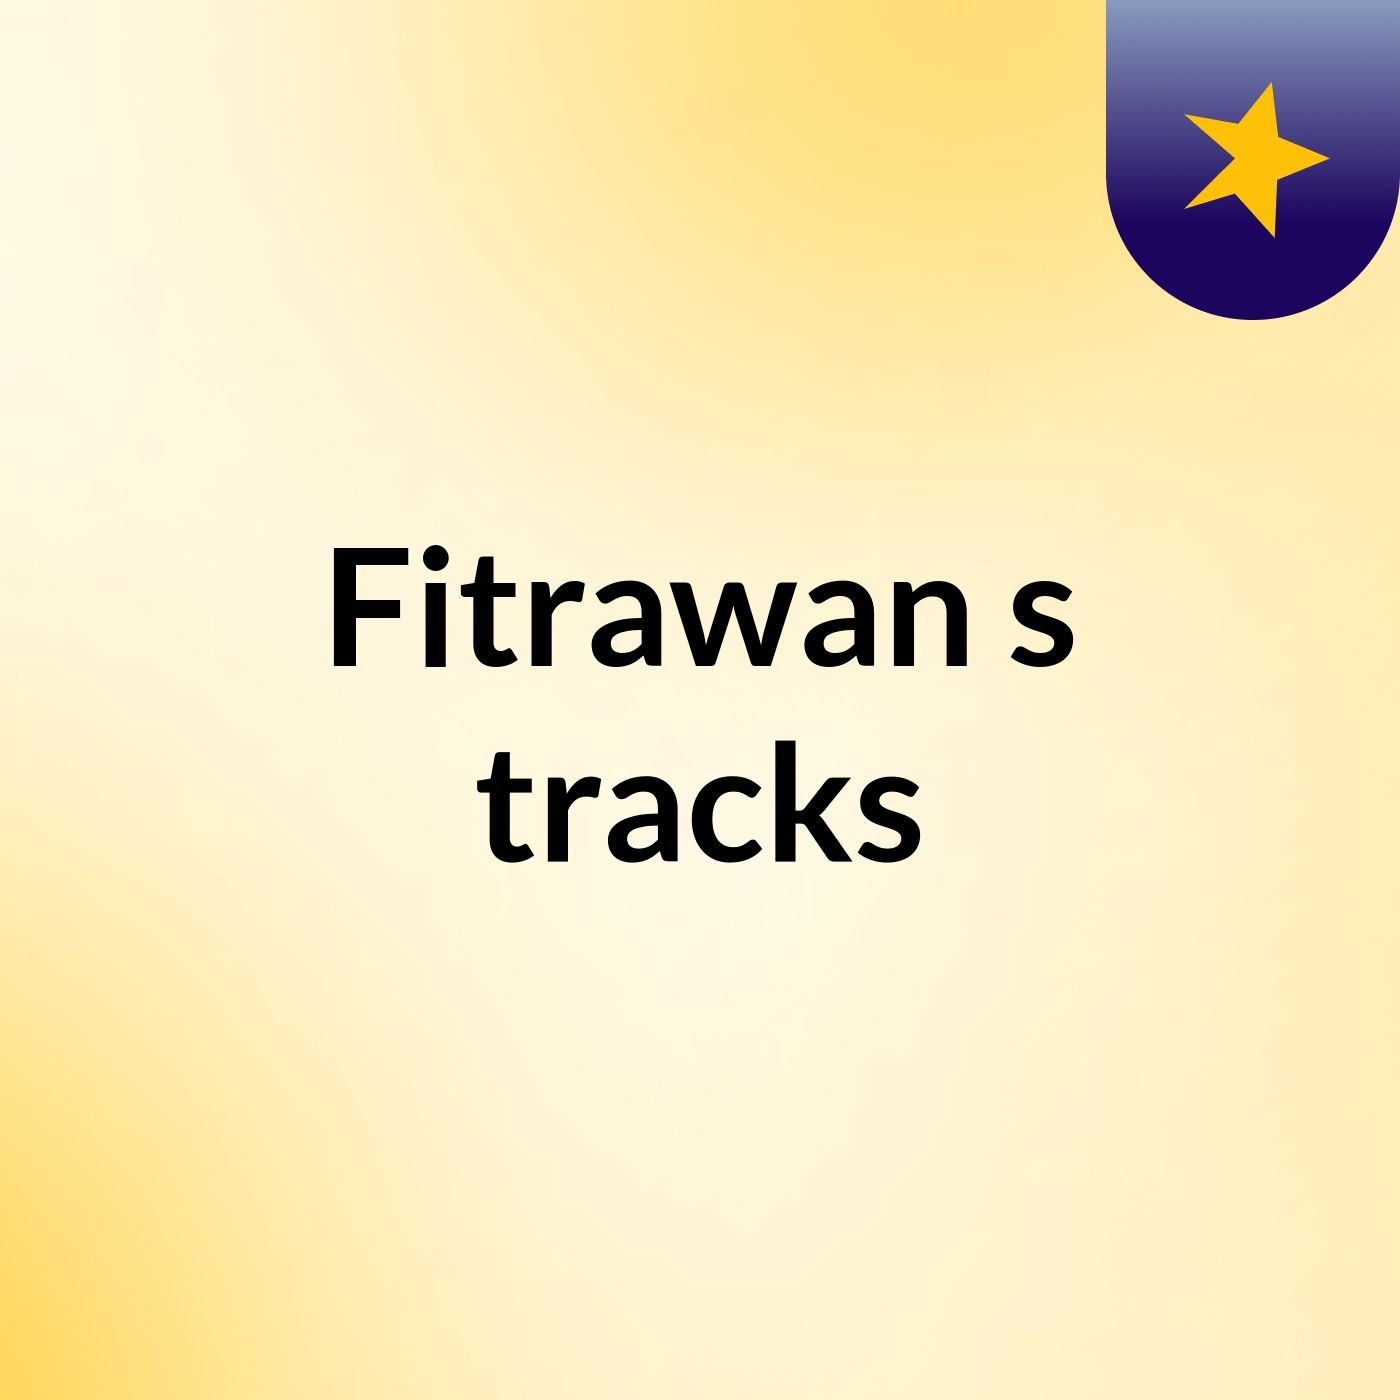 Fitrawan's tracks